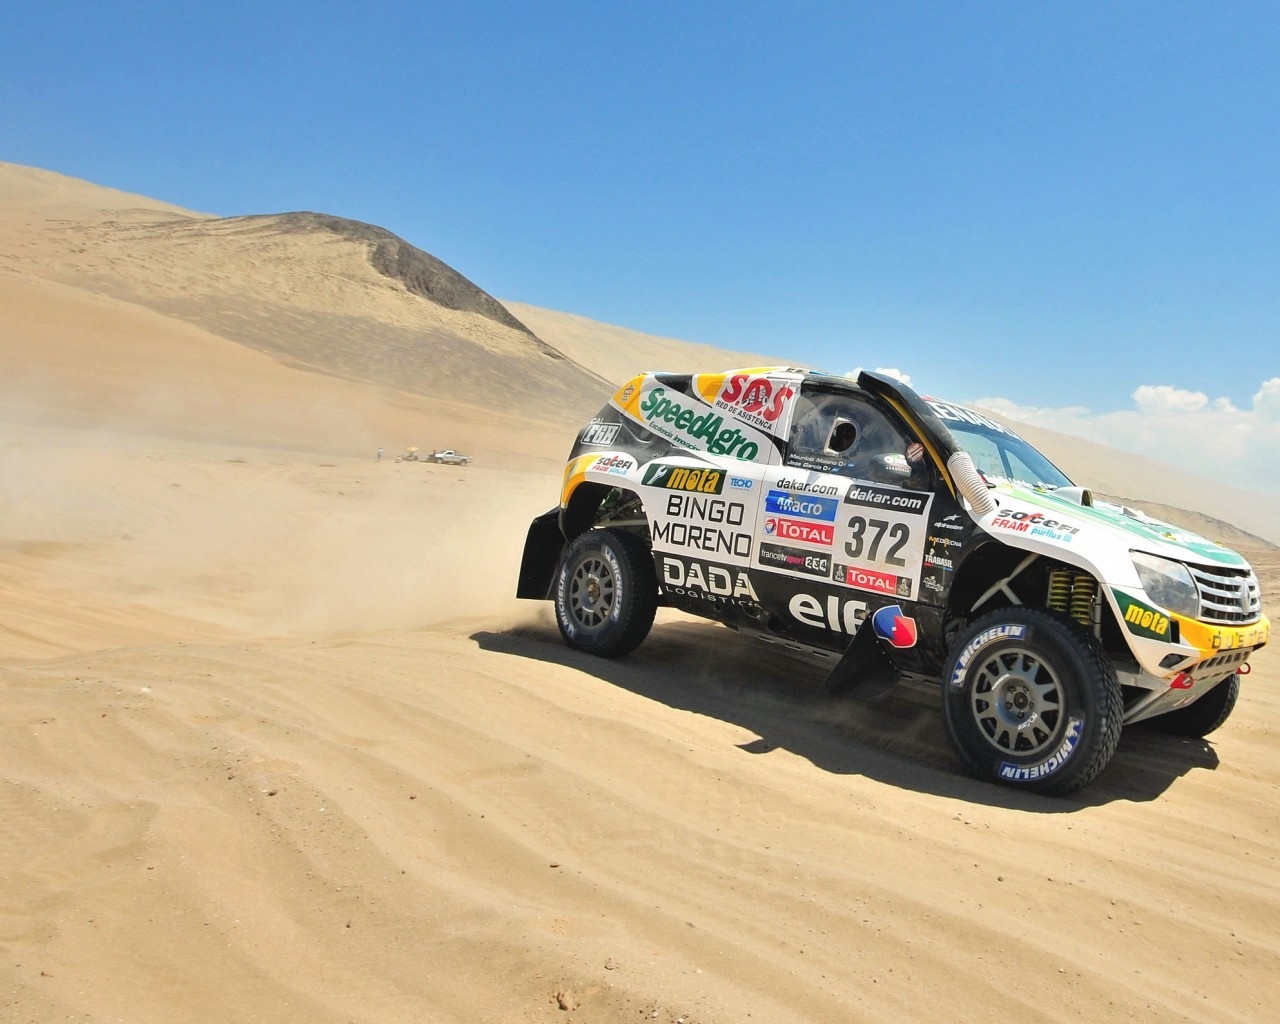 Renault Rally Dakar for 1280 x 1024 resolution